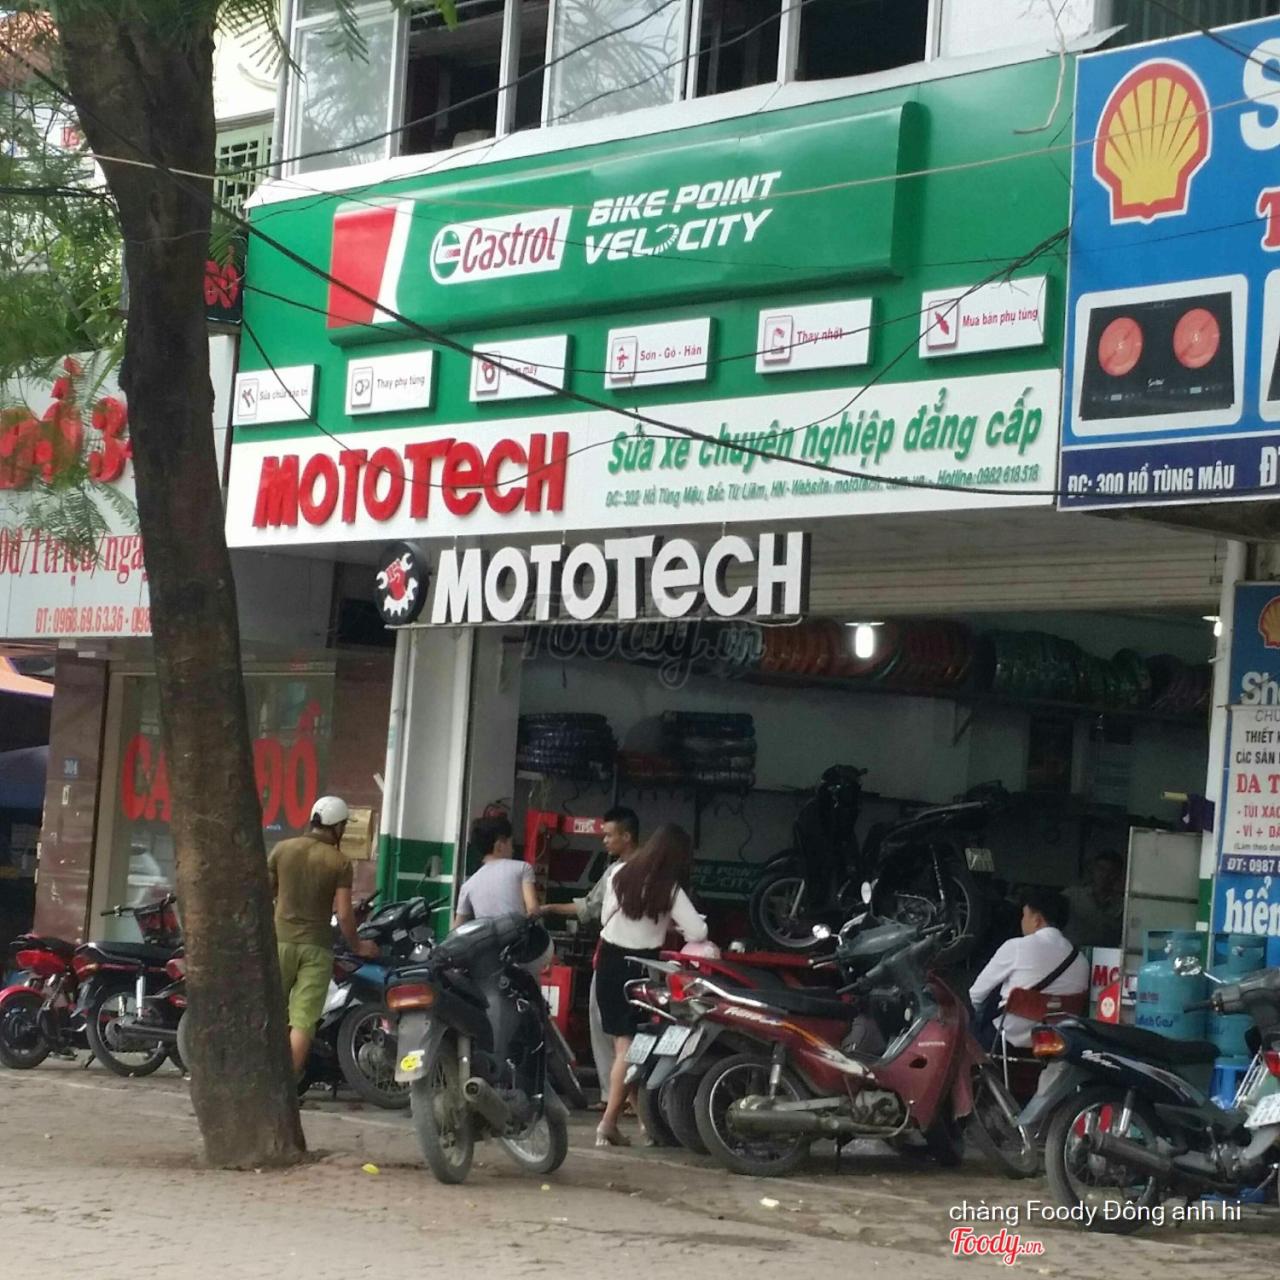 Mototech - Sửa Xe Chuyên Nghiệp Ở Quận Bắc Từ Liêm, Hà Nội | Album Tổng Hợp  | Mototech - Sửa Xe Chuyên Nghiệp | Foody.Vn